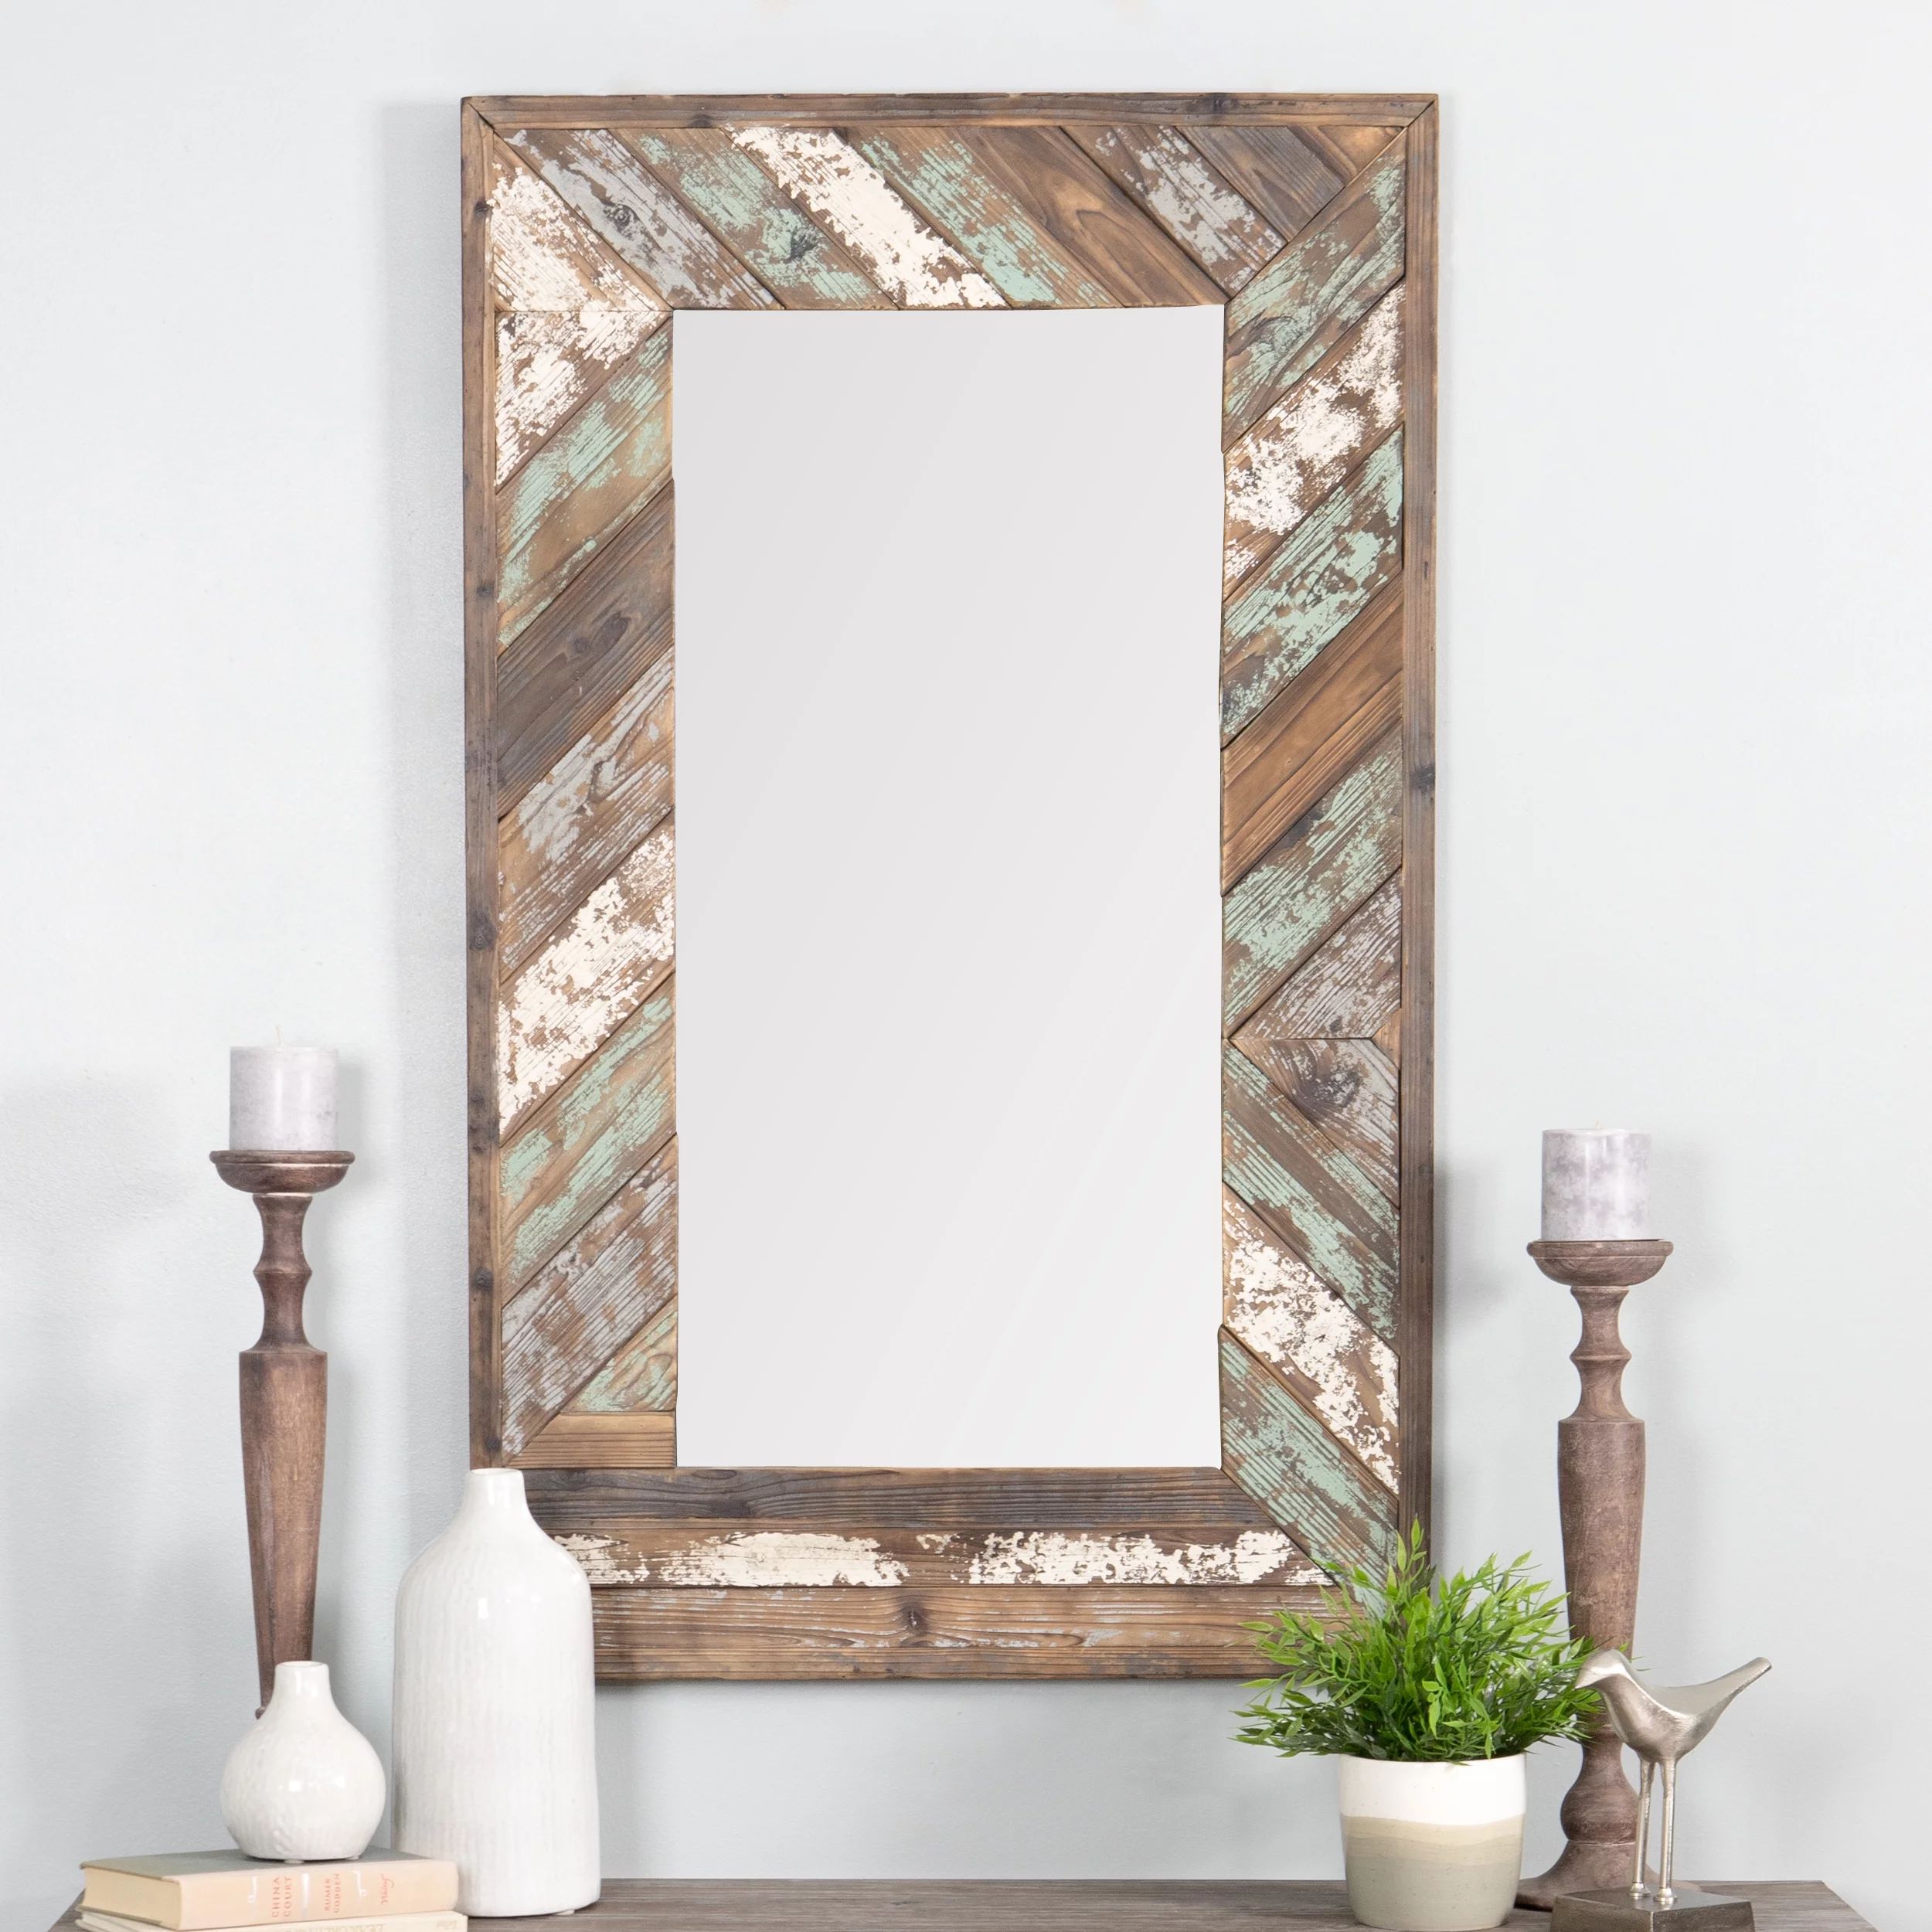 Brogan Distressed Wood Slat Wall Mirror Multi-Colored 43" x 26" by Aspire - Walmart.com | Walmart (US)